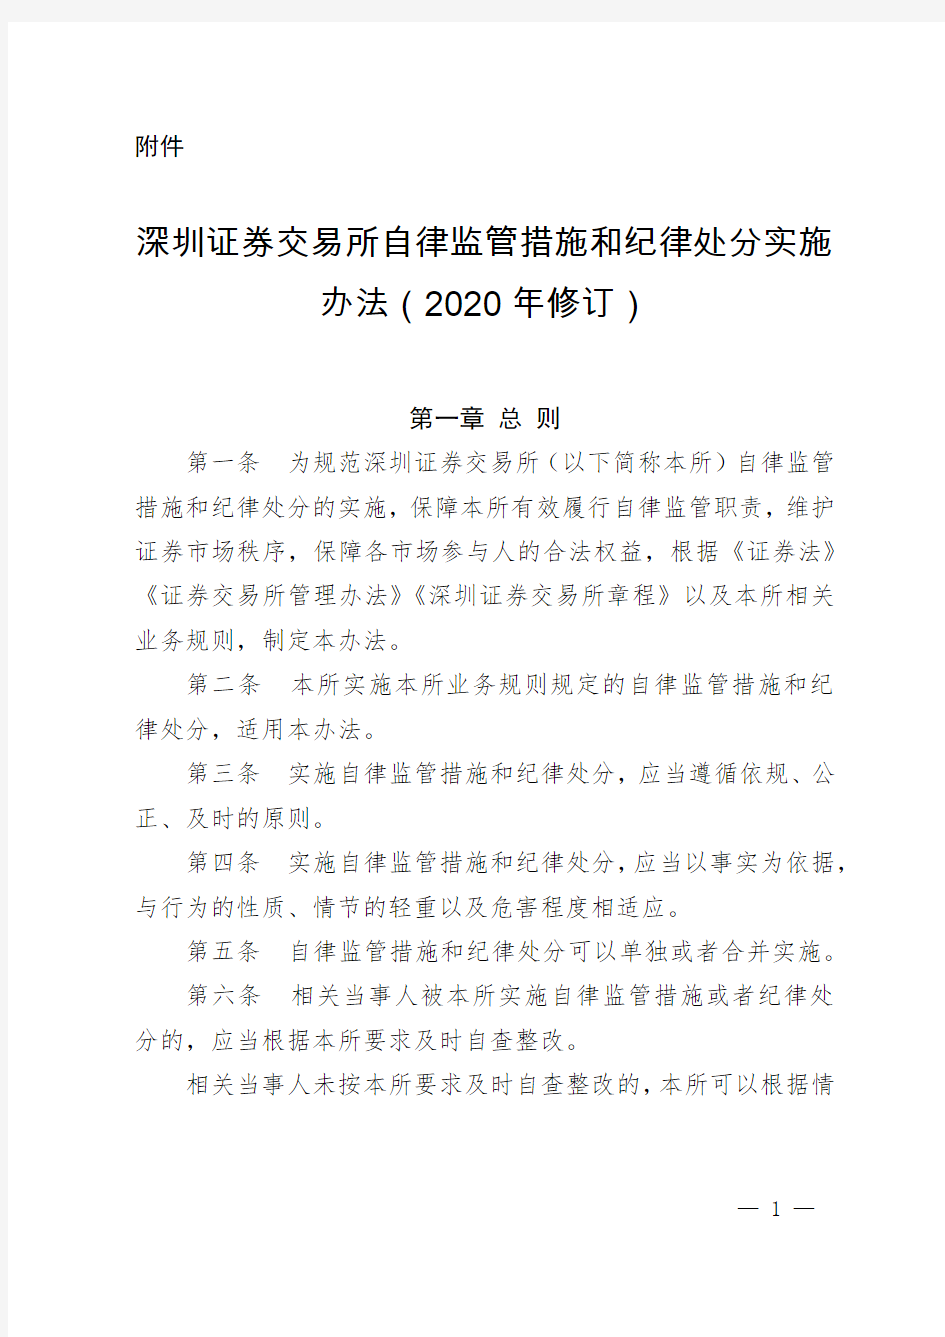 深圳证券交易所自律监管措施和纪律处分实施办法(2020年修订)